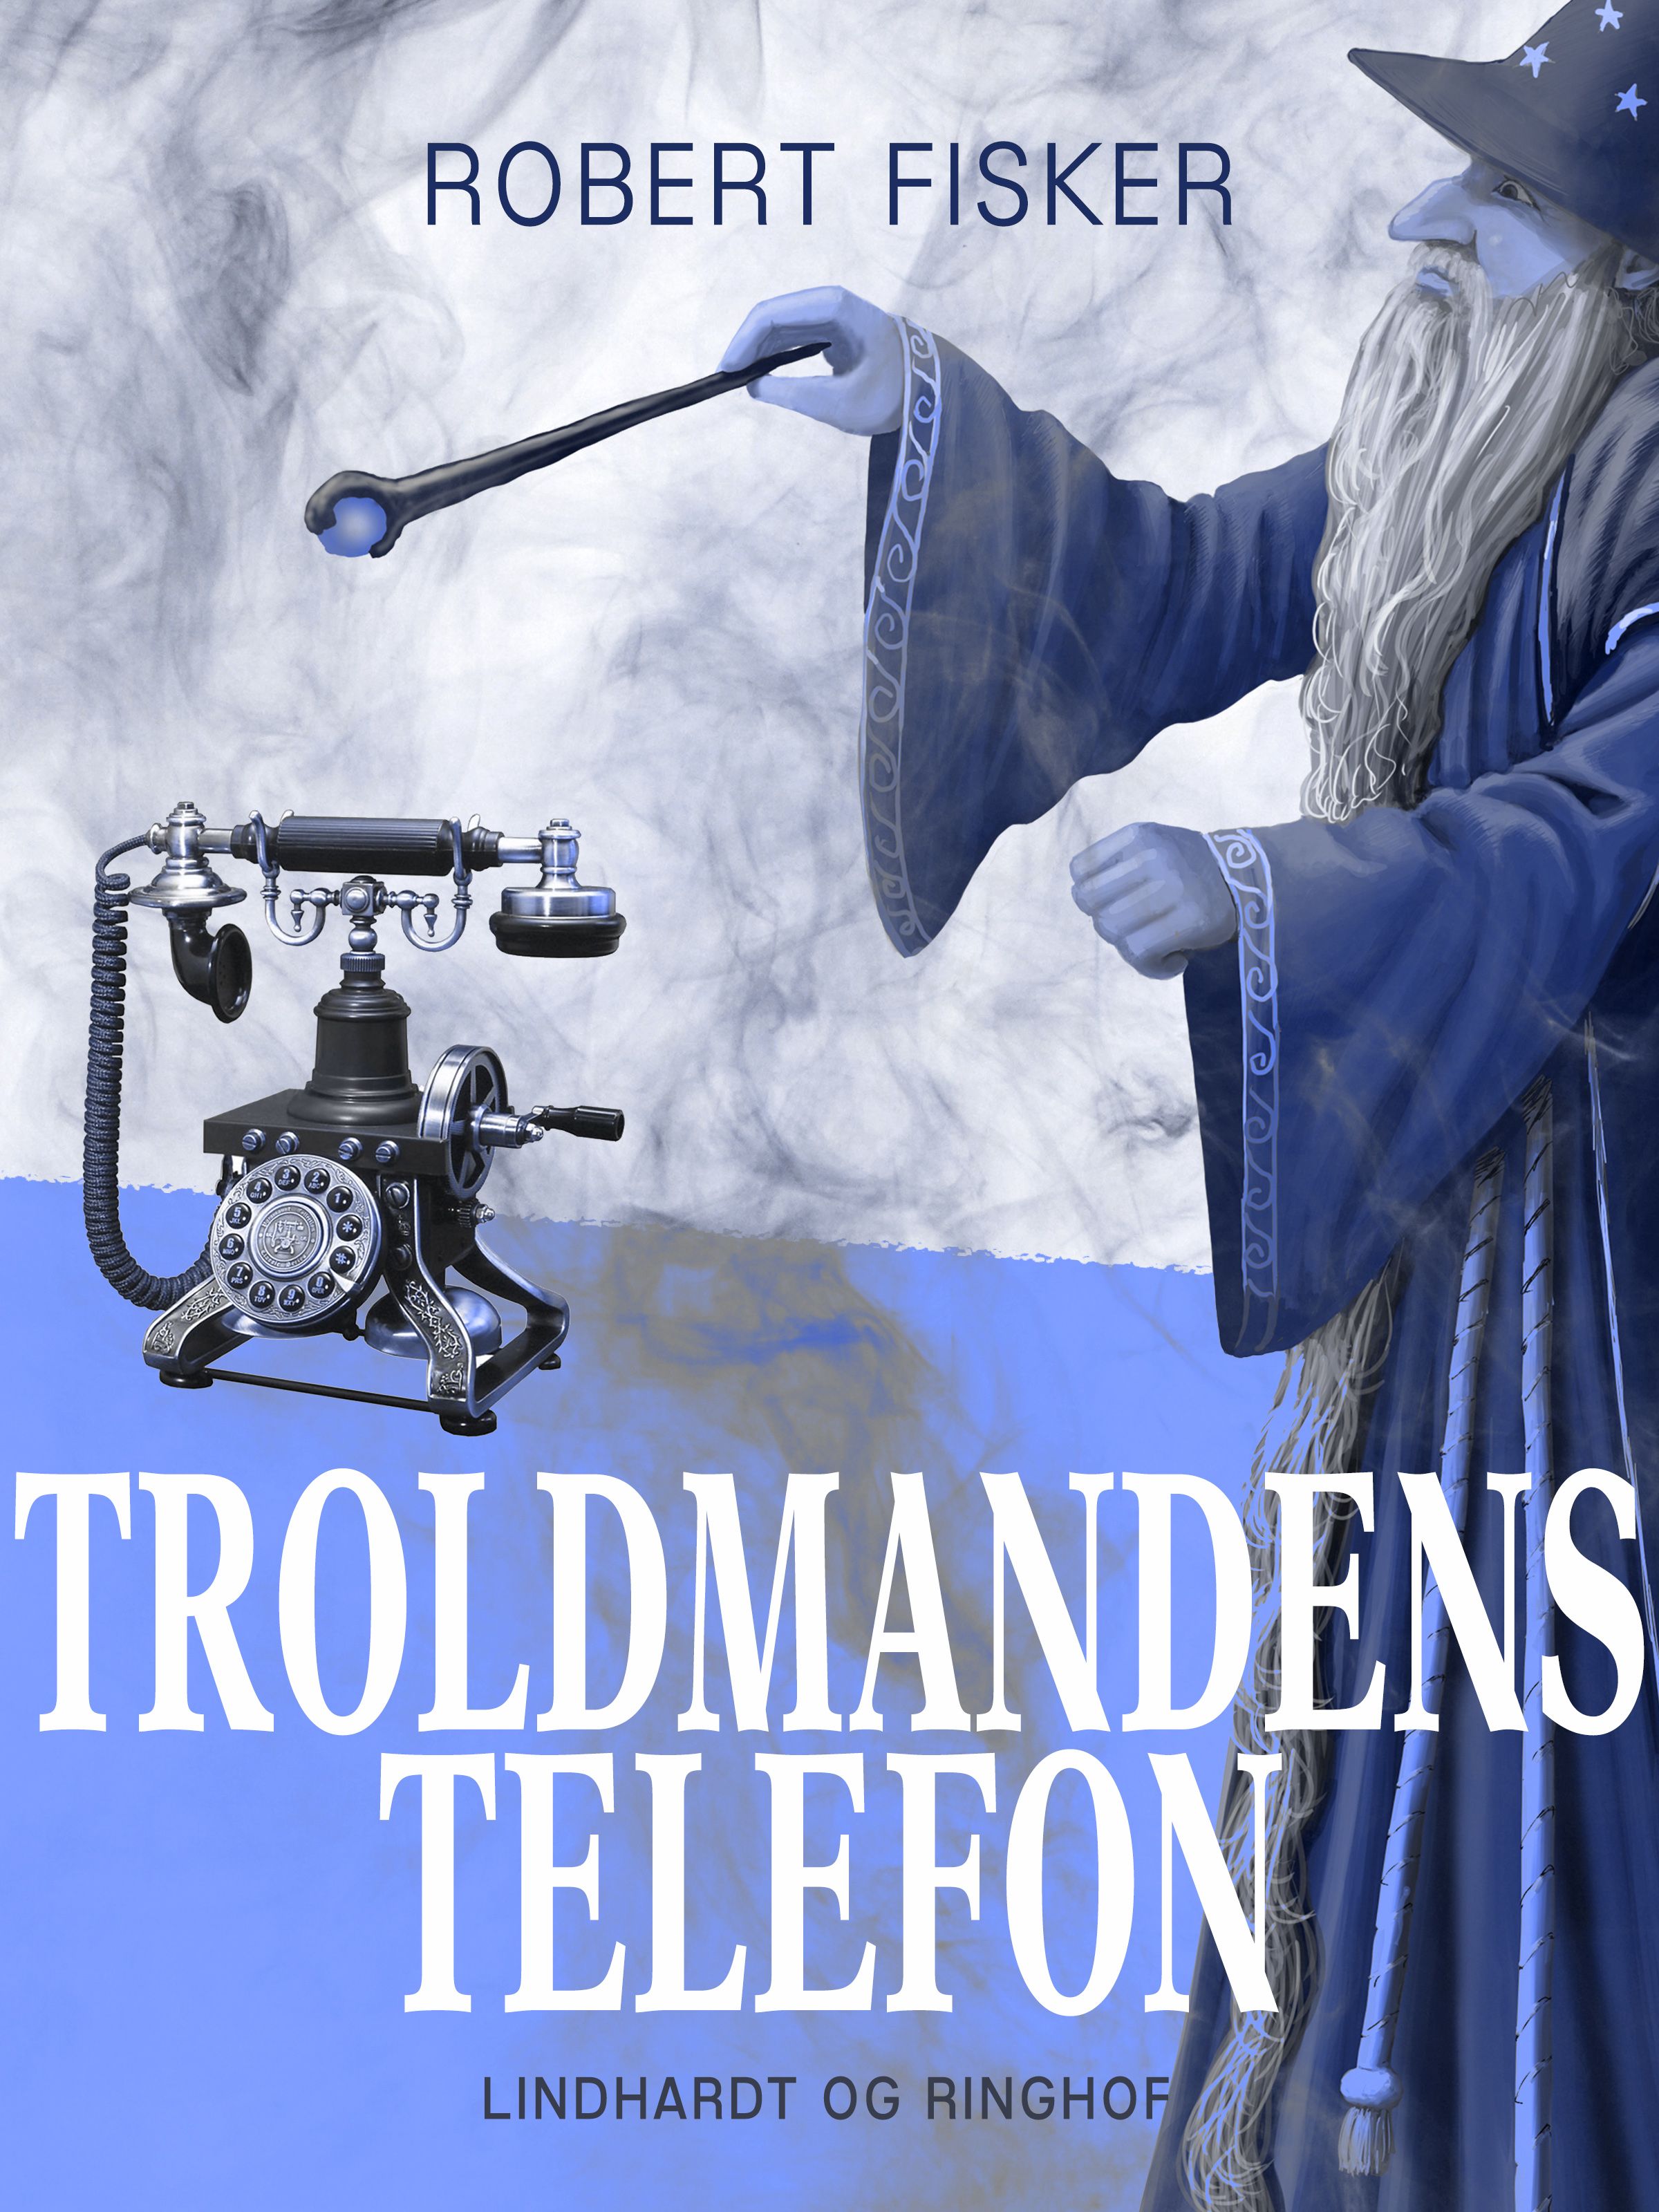 Troldmandens telefon, ljudbok av Robert Fisker